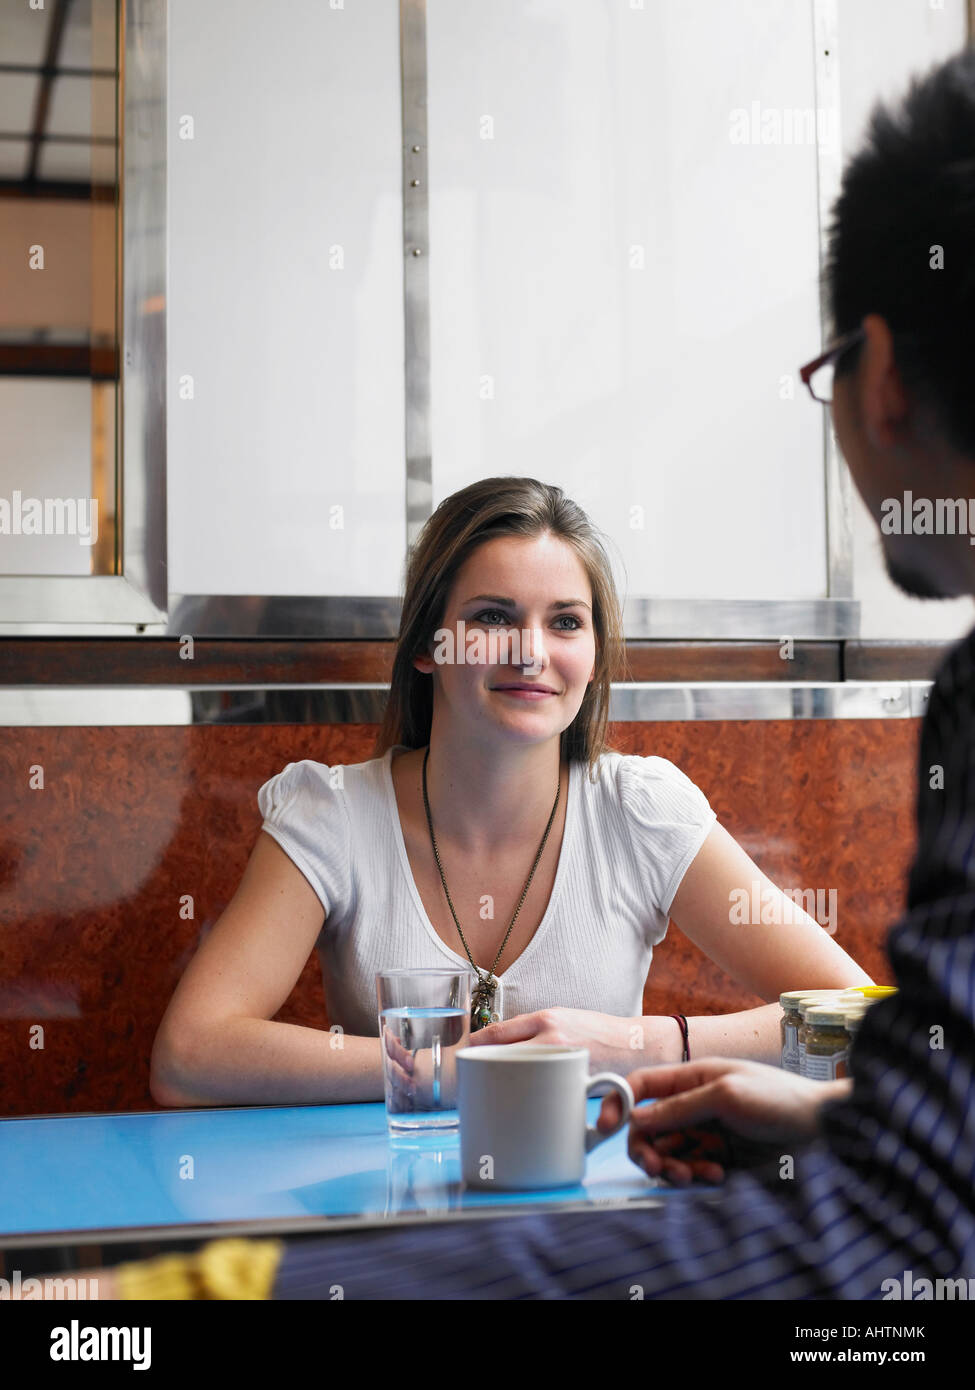 Jeune femme assise dans un café avec l'homme, smiling Banque D'Images